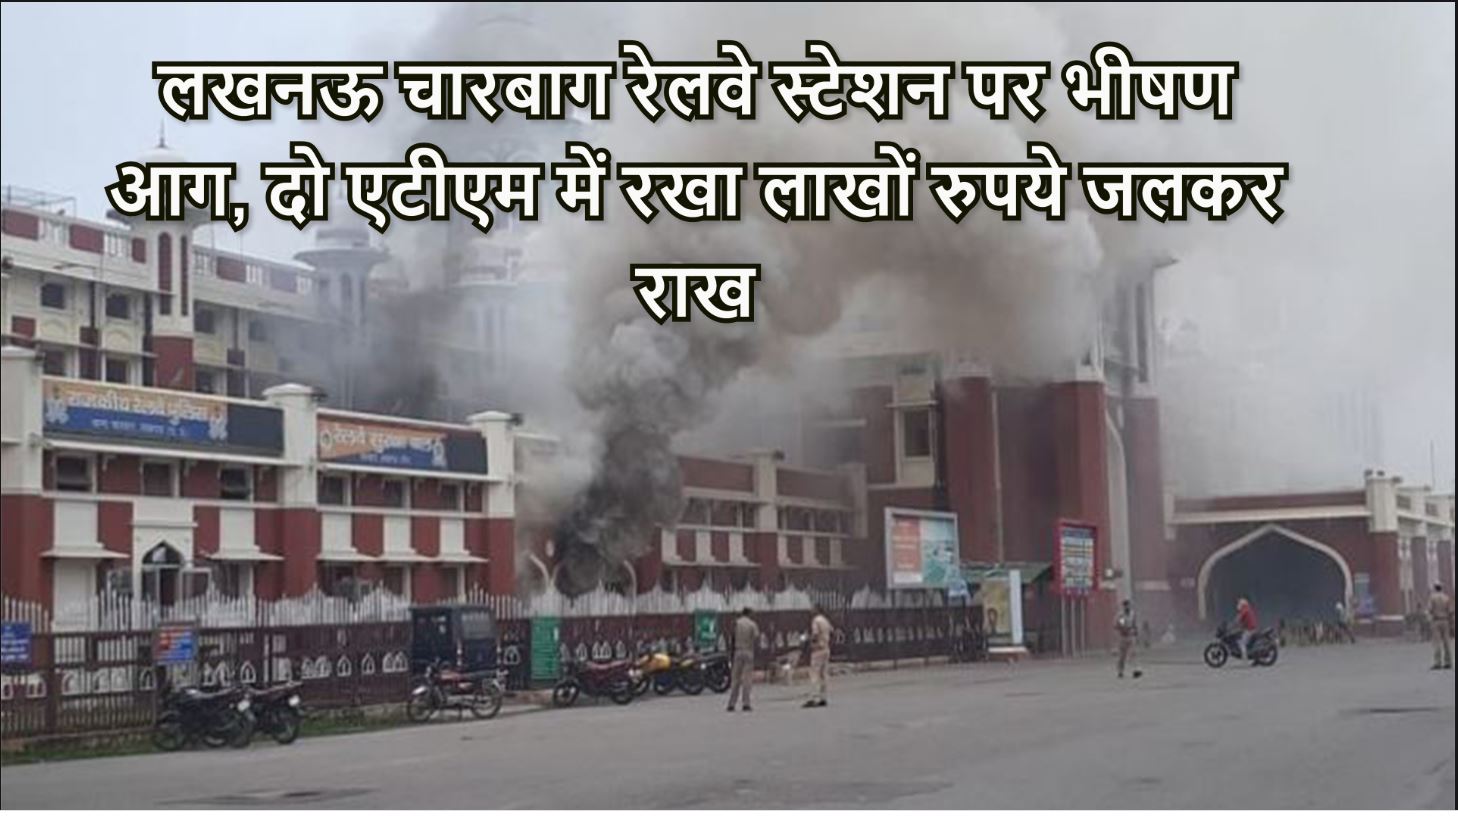 लखनऊ: चारबाग रेलवे स्टेशन पर भीषण आग, दो एटीएम में रखा लाखों रुपये जलकर राख